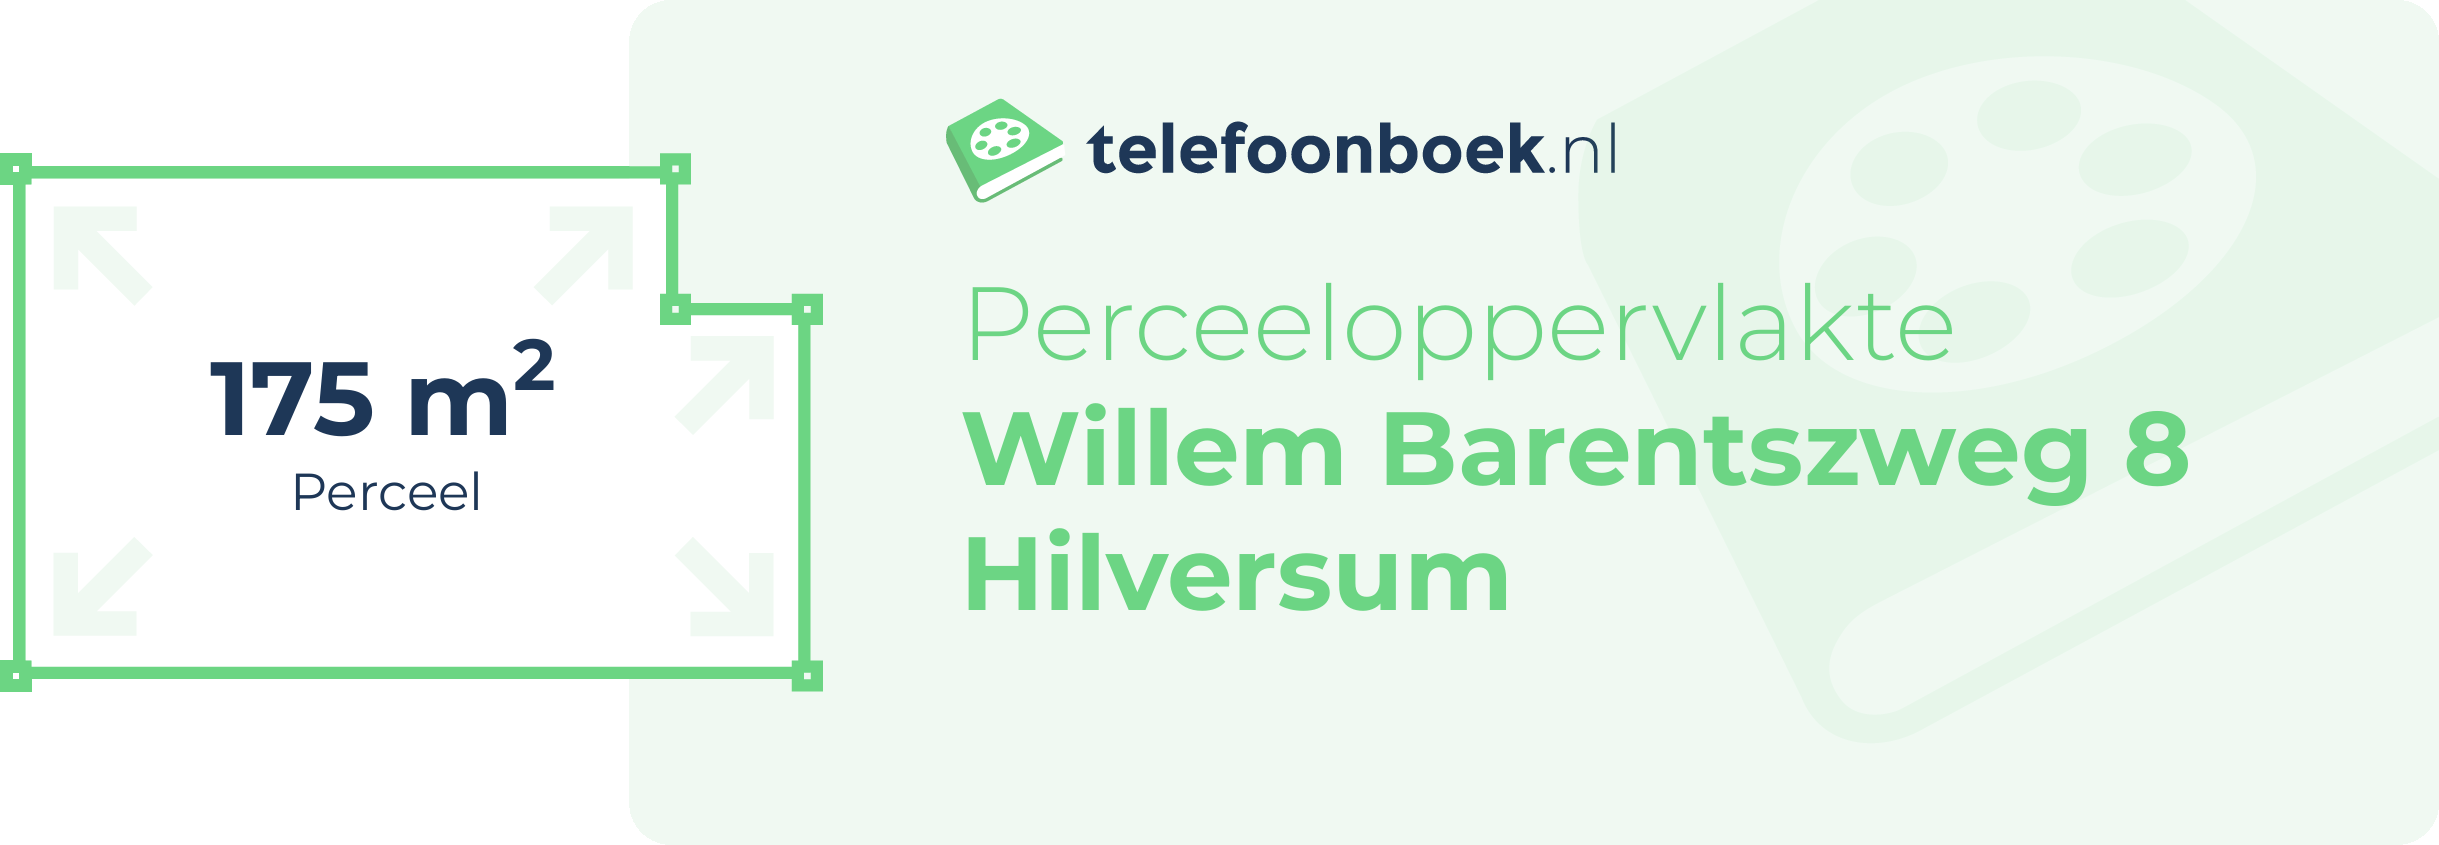 Perceeloppervlakte Willem Barentszweg 8 Hilversum